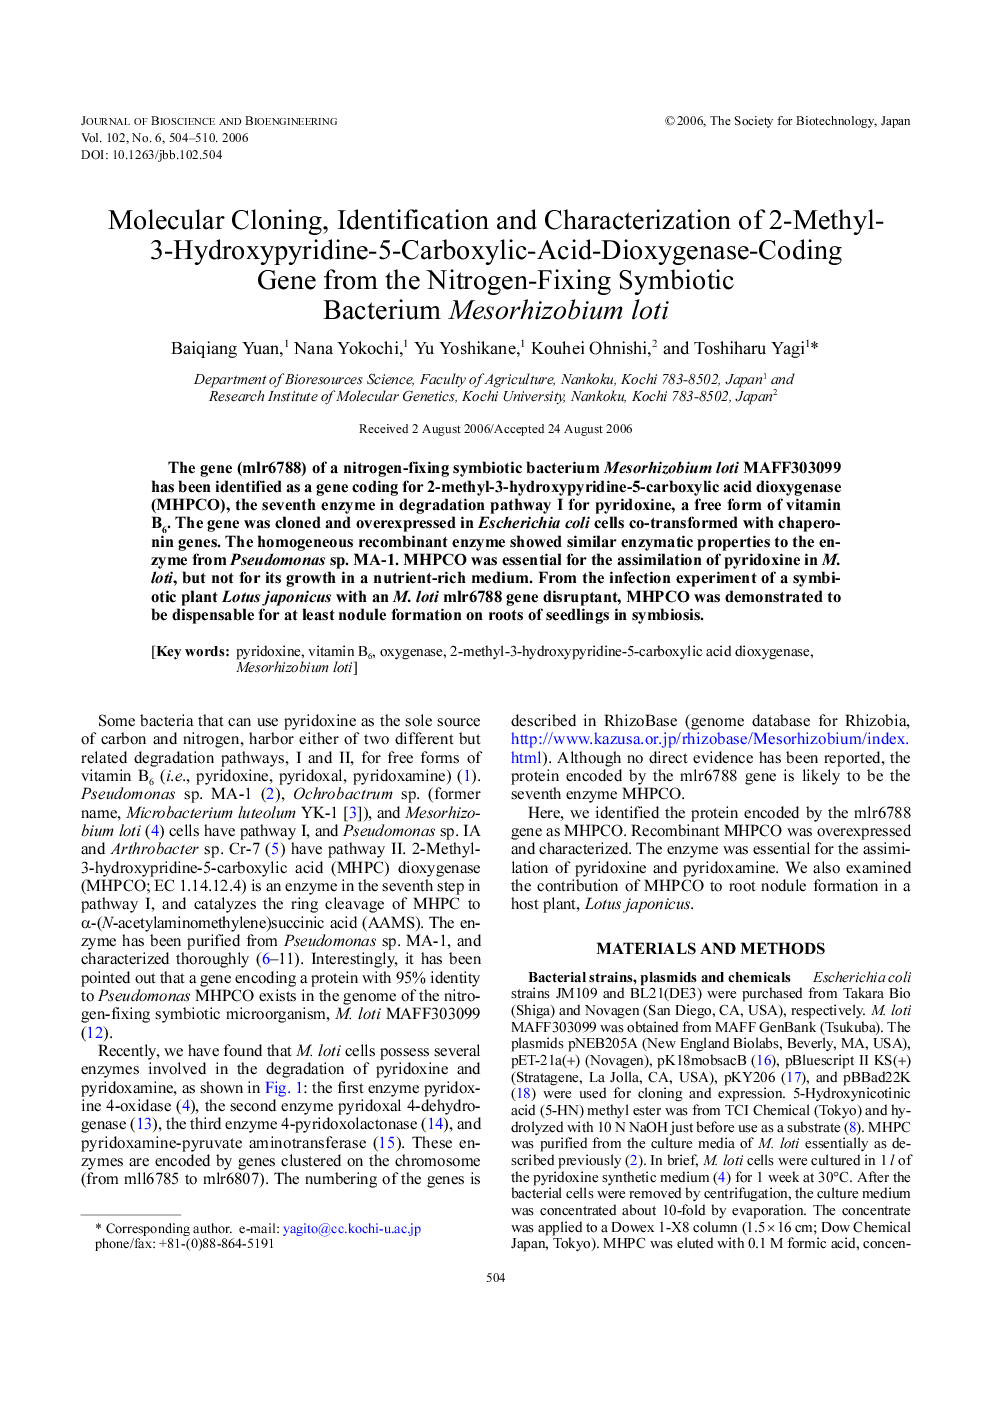 Molecular cloning, identification and characterization of 2-methyl-3-hydroxypyridine-5-carboxylic-acid-dioxygenase-coding gene from the nitrogen-fixing symbiotic bacterium Mesorhizobium loti